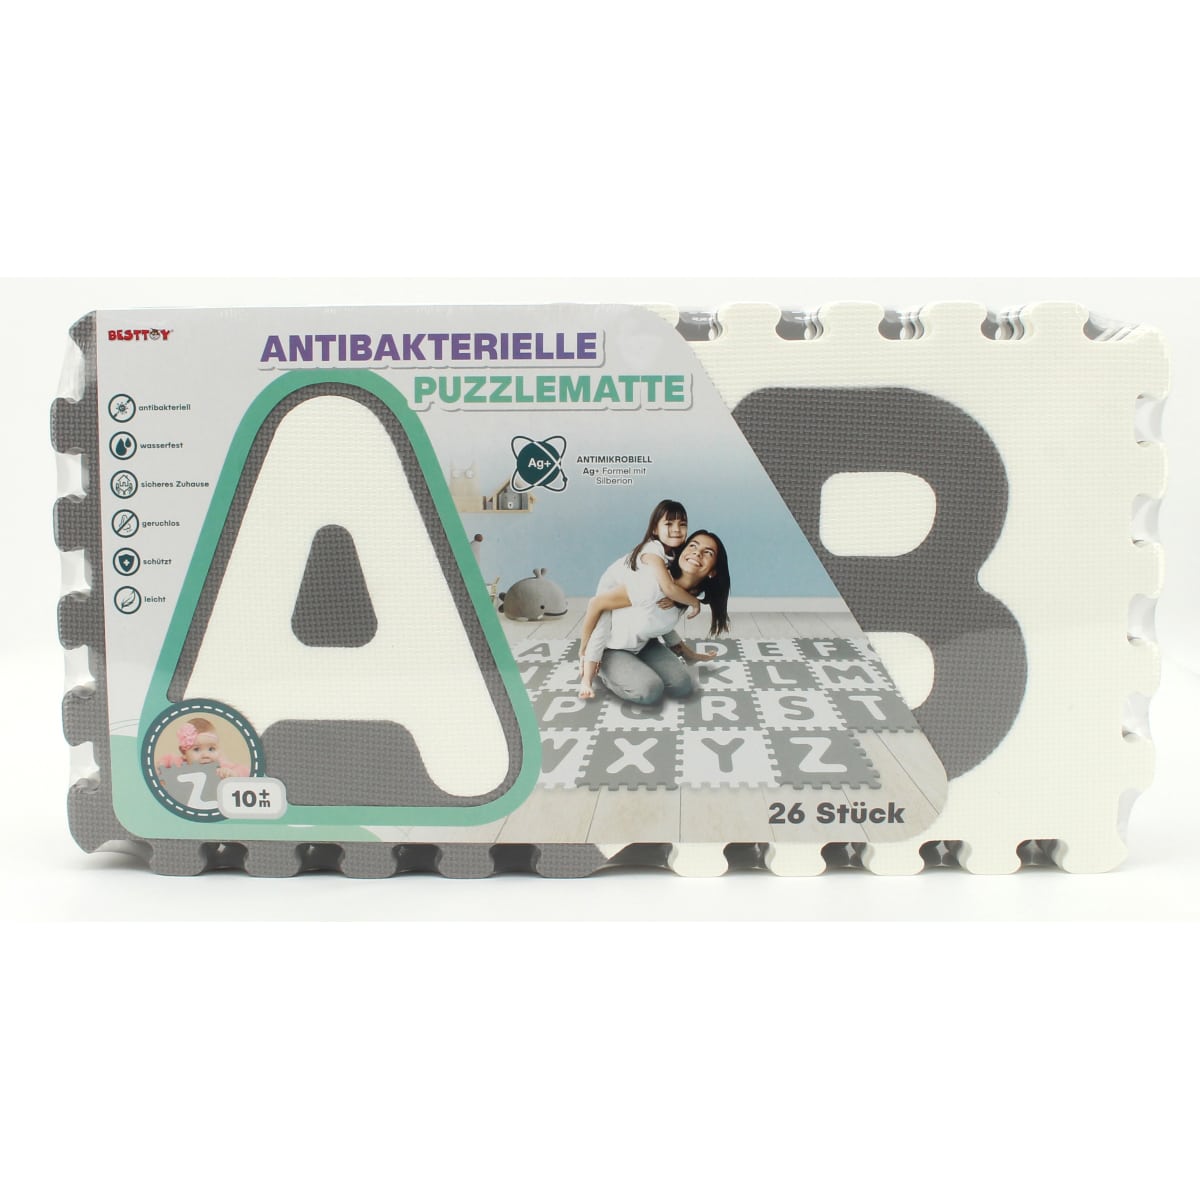 Besttoy - Soft Puzzlematte - Buchstaben A-Z - grau/weiß - 26 Teile